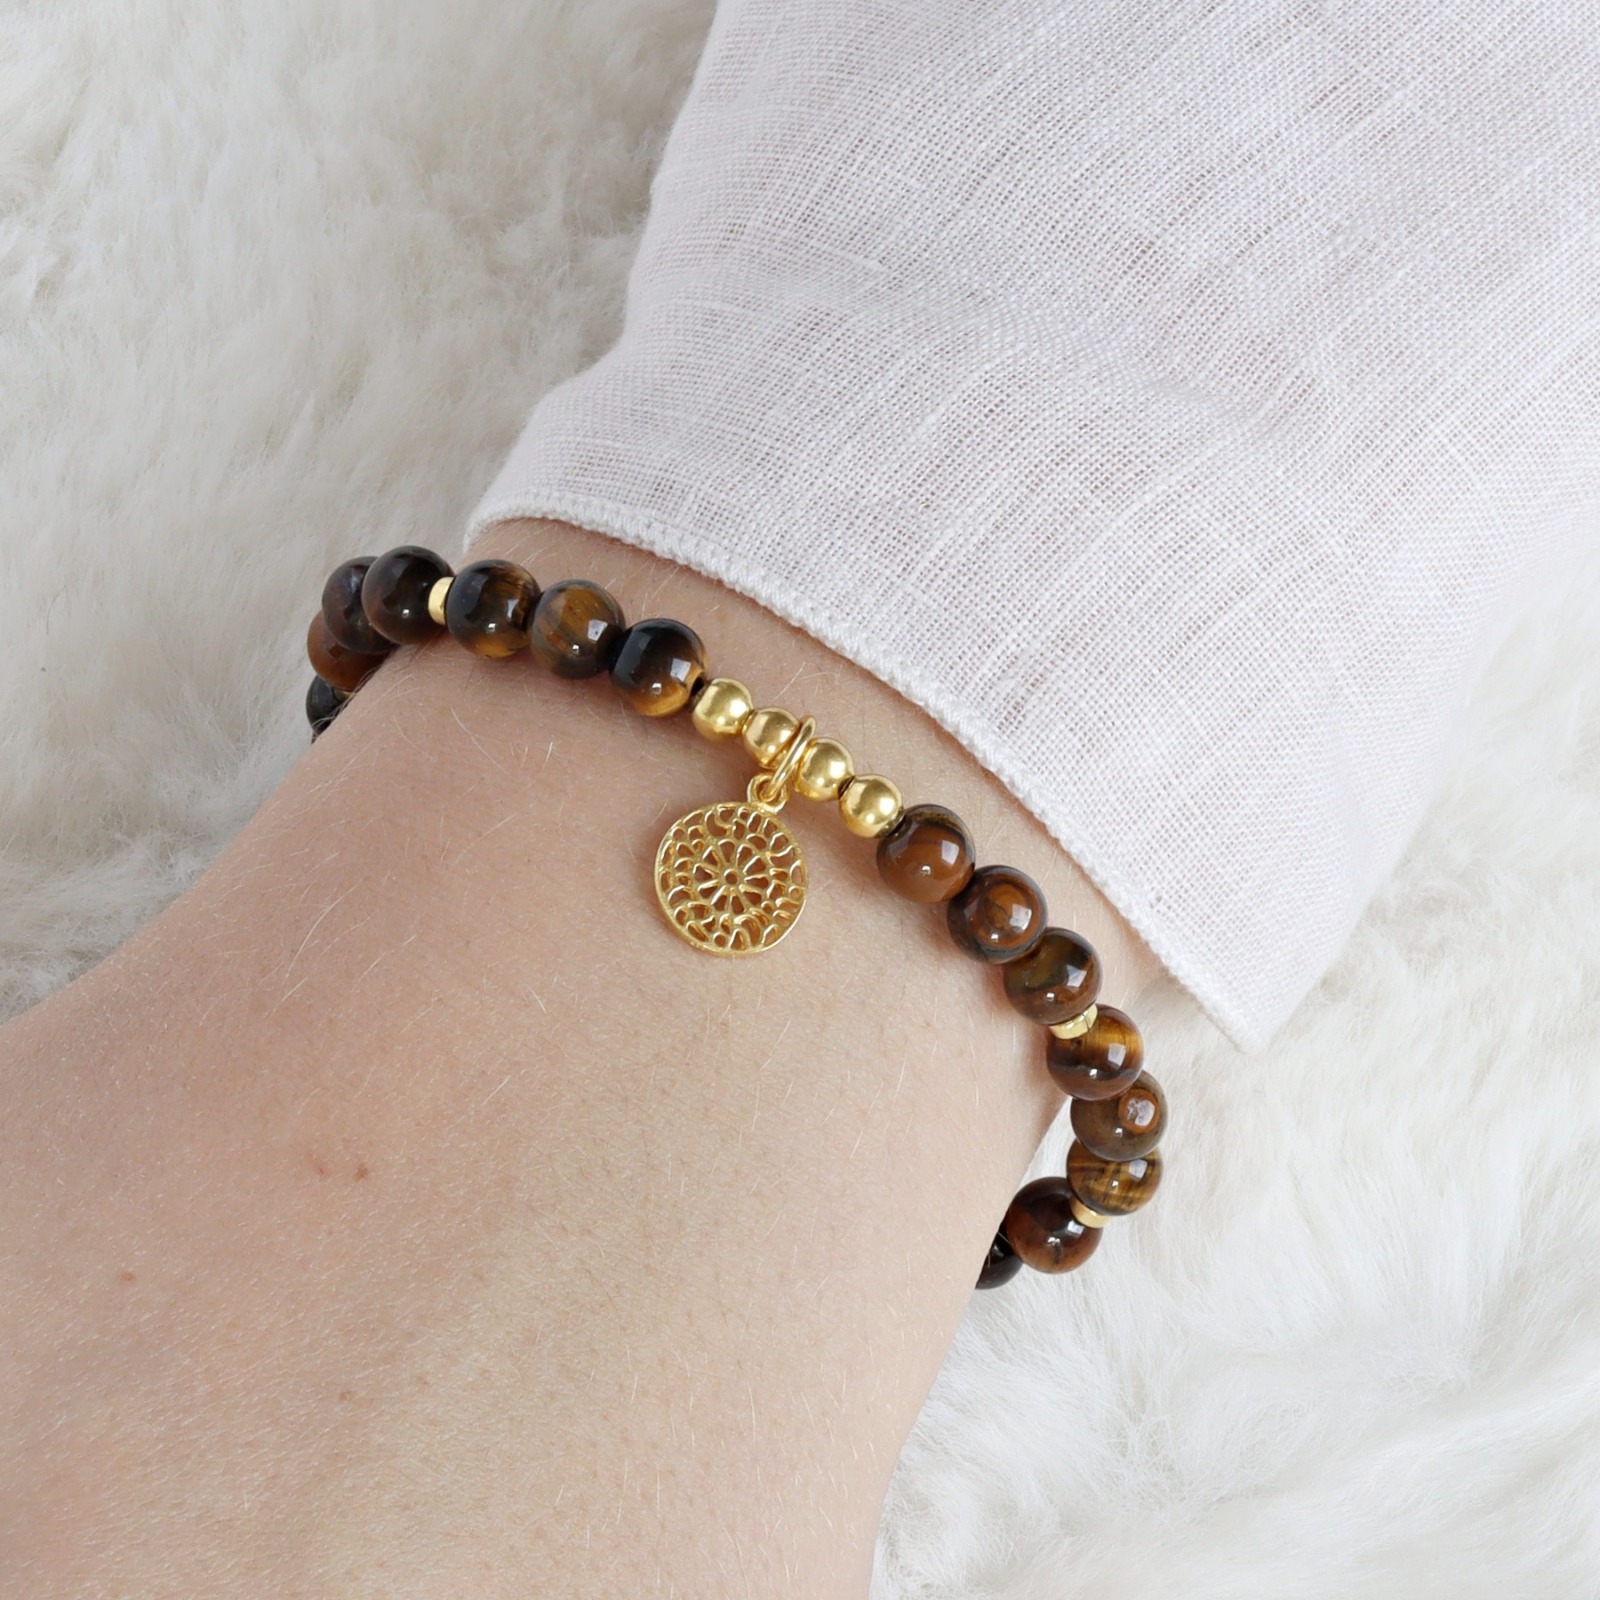 Armband Tigerauge mit Mandala 725er Silber oder vergoldet perfektes Geschenk für Frauen